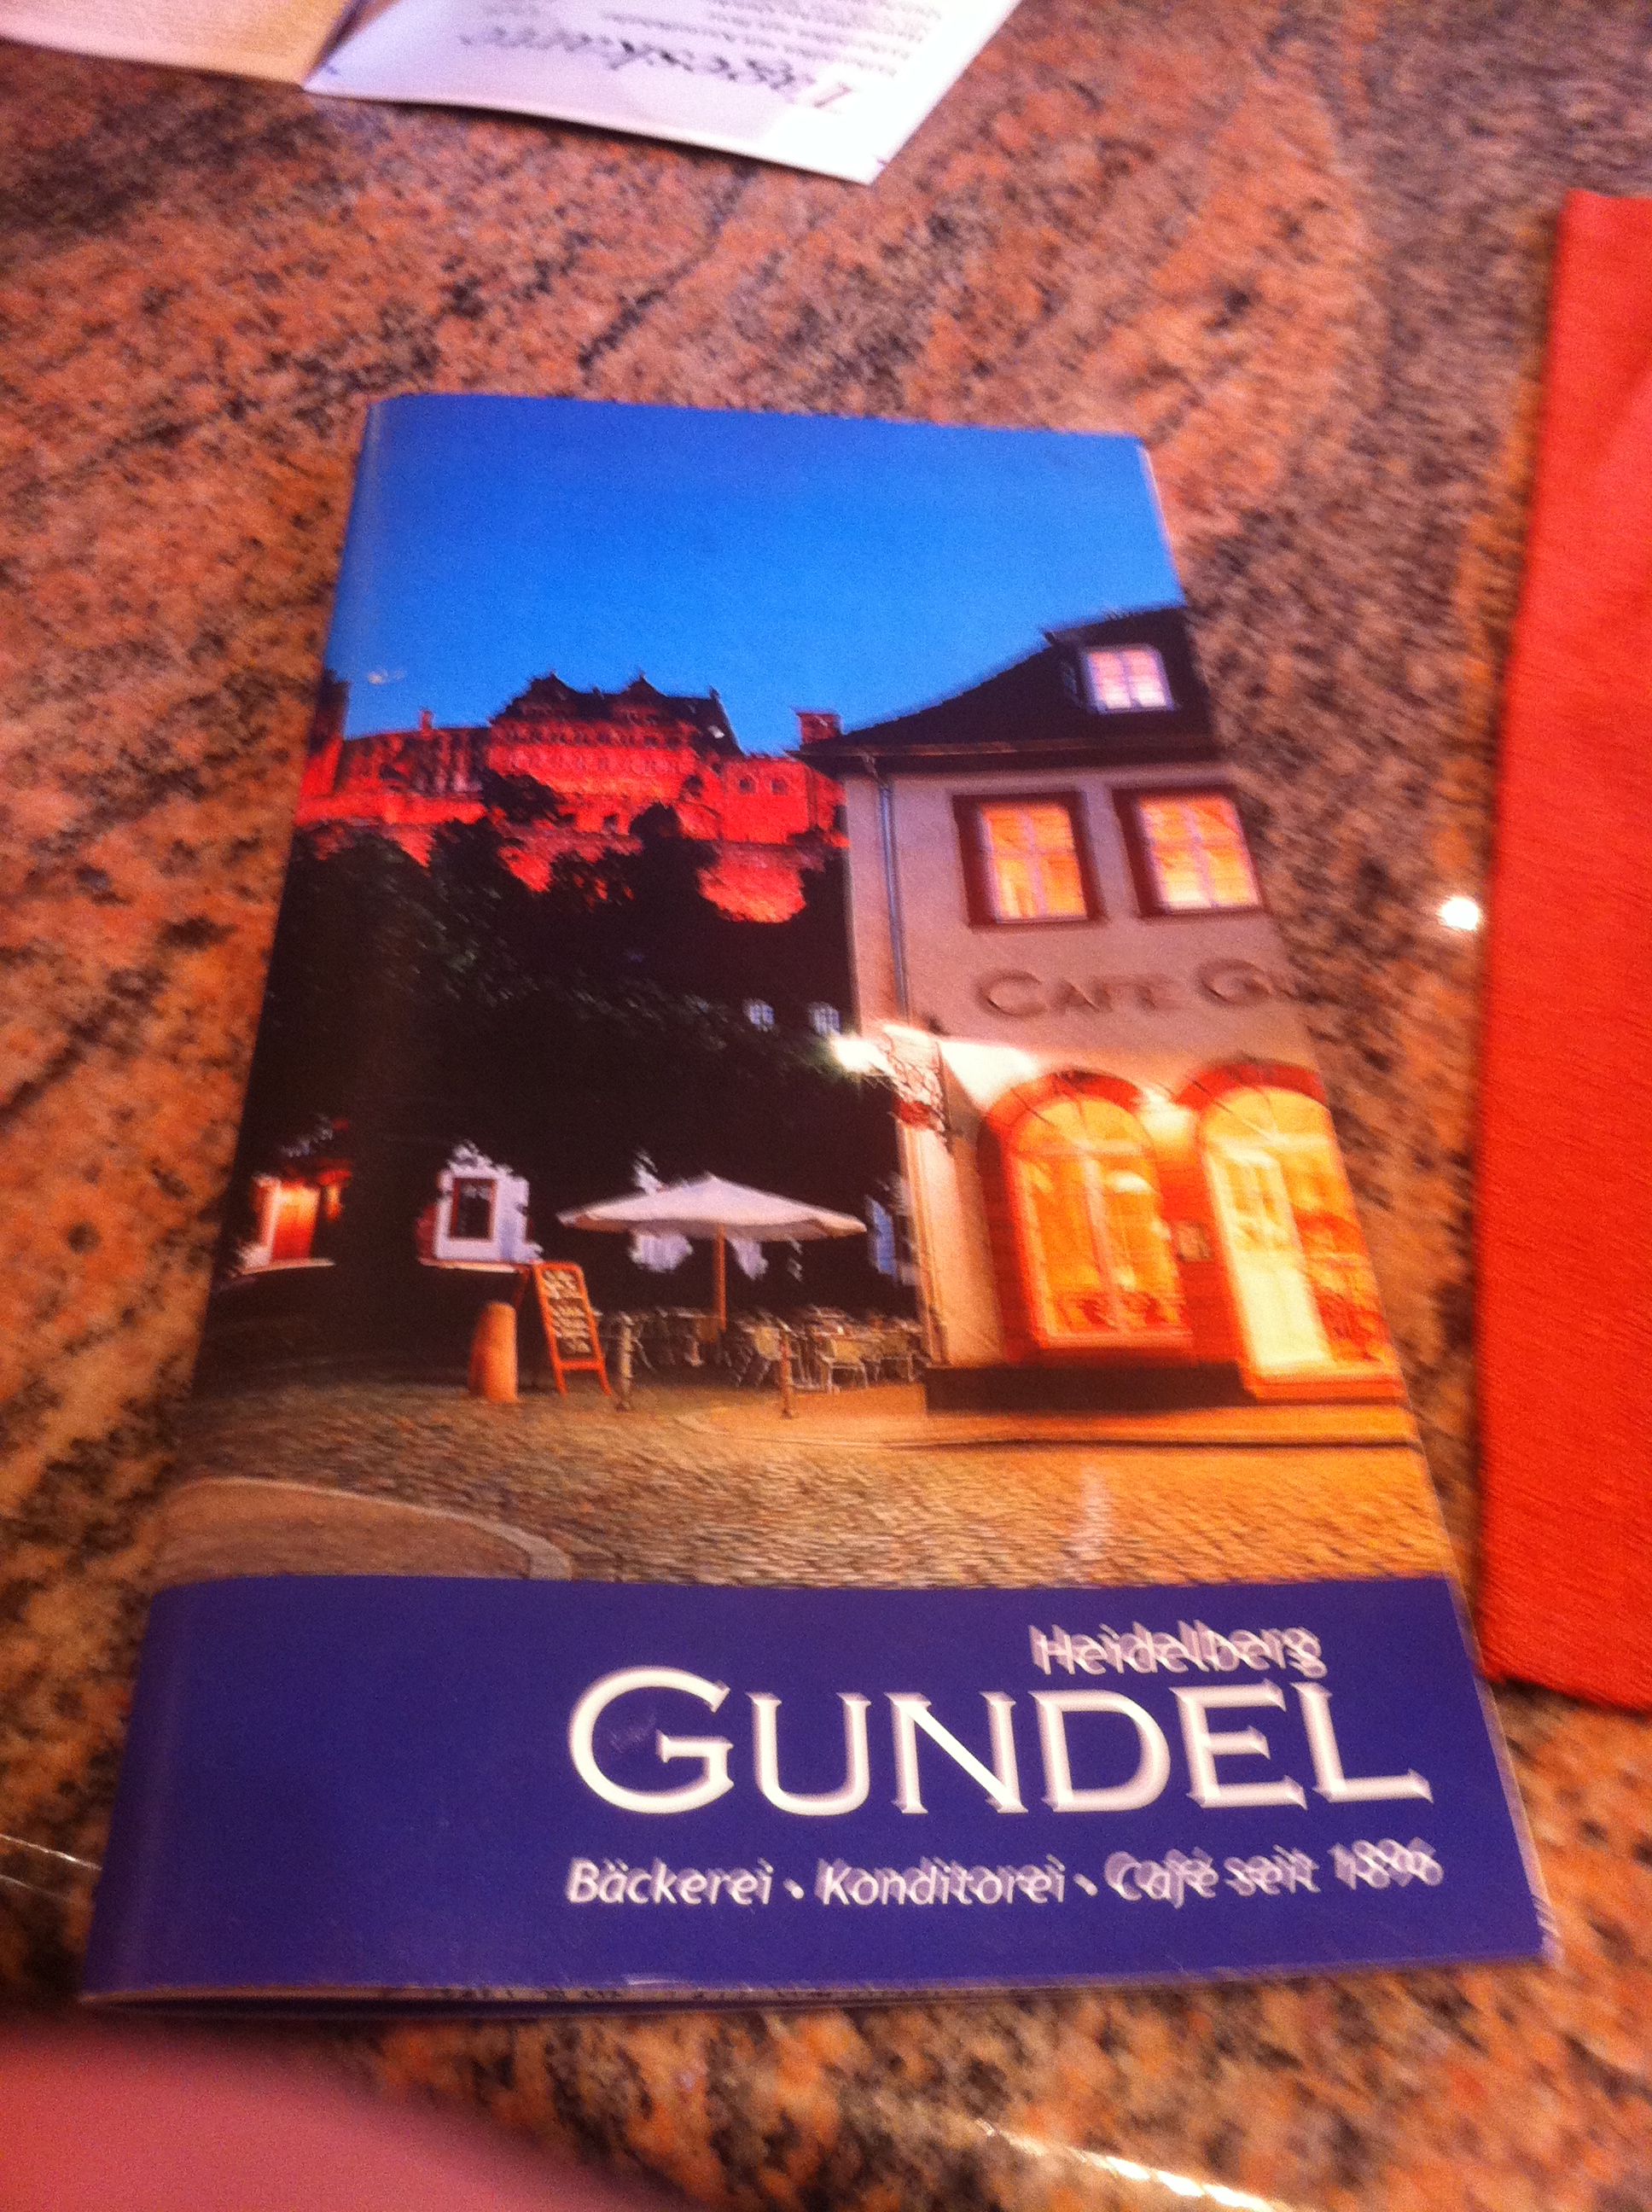 Getränke- und Speisenkarte von Café Gundel in Heidelberg